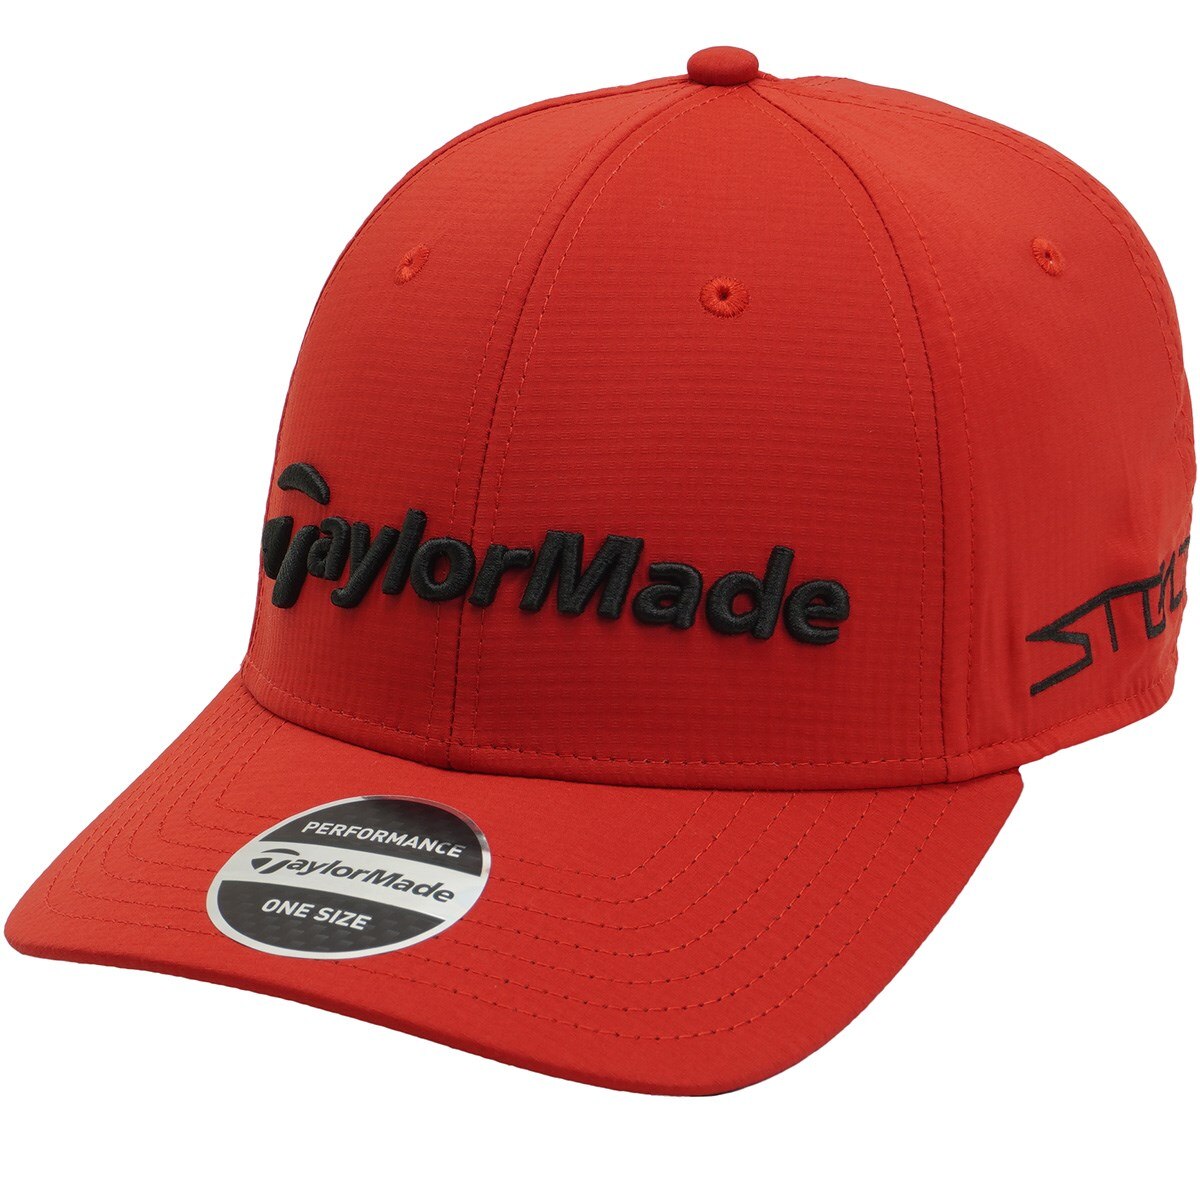 ツアーレーダーキャップ(【男性】キャップ)|Taylor Made(テーラーメイド) TD910の通販 GDOゴルフショップ(0000691685)